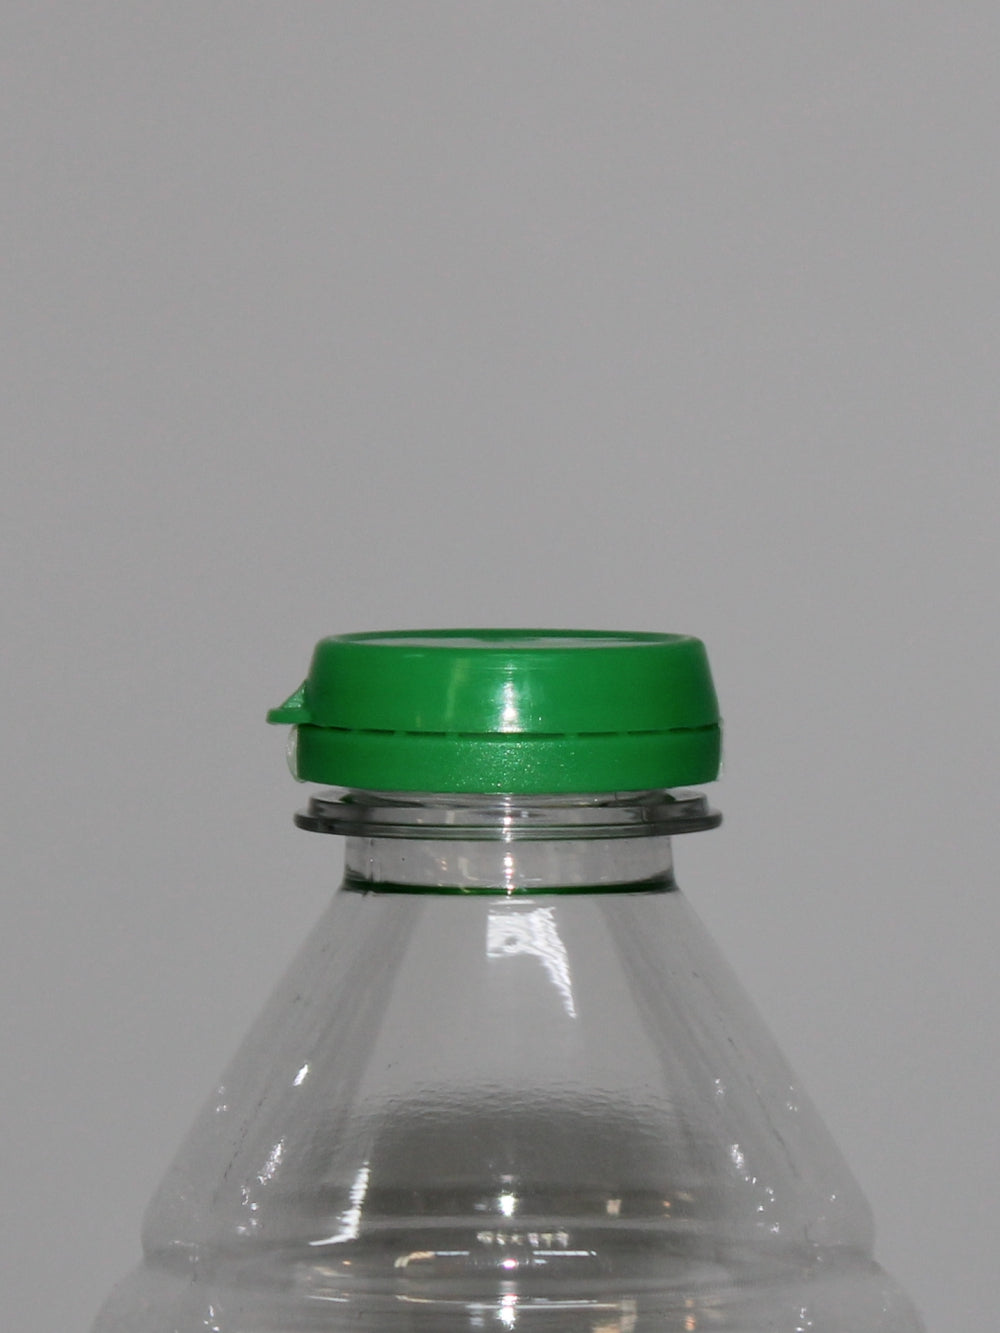 1Lt Spiral PET Bottle - (Pack of 90 units)